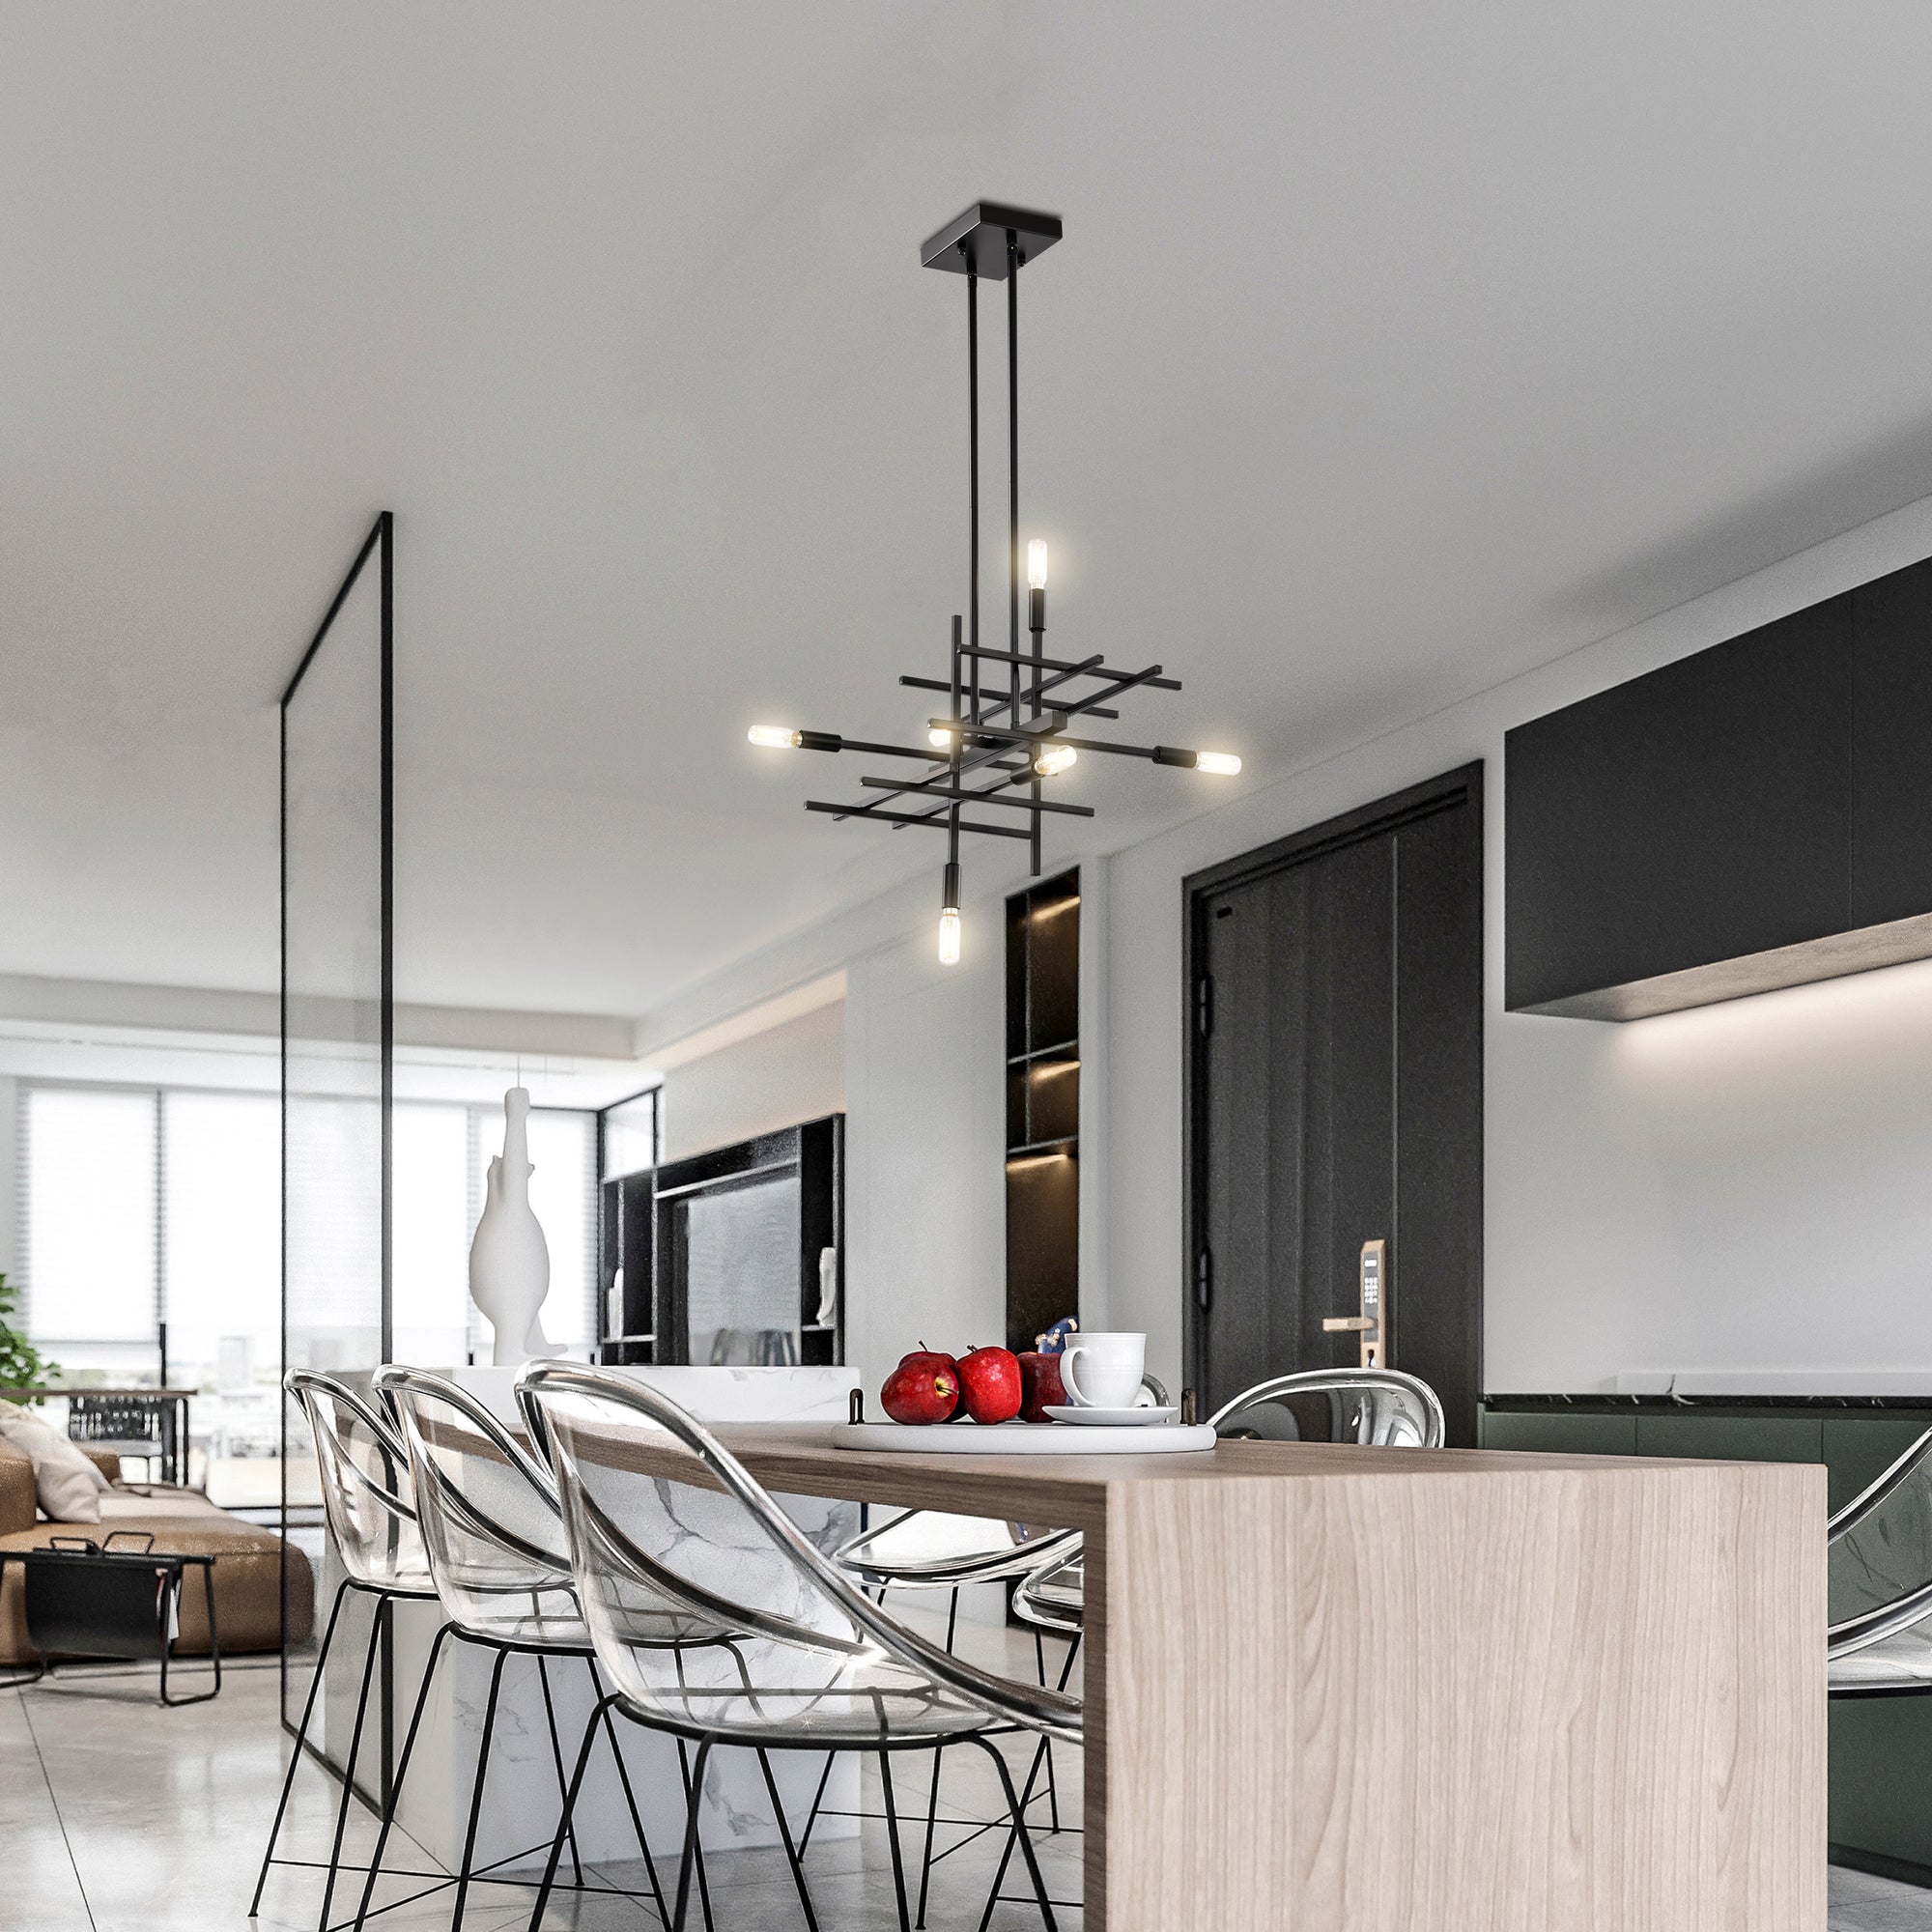 Badesi Geometric 6-Light Chandelier for Dining/Living Room, Bedroom